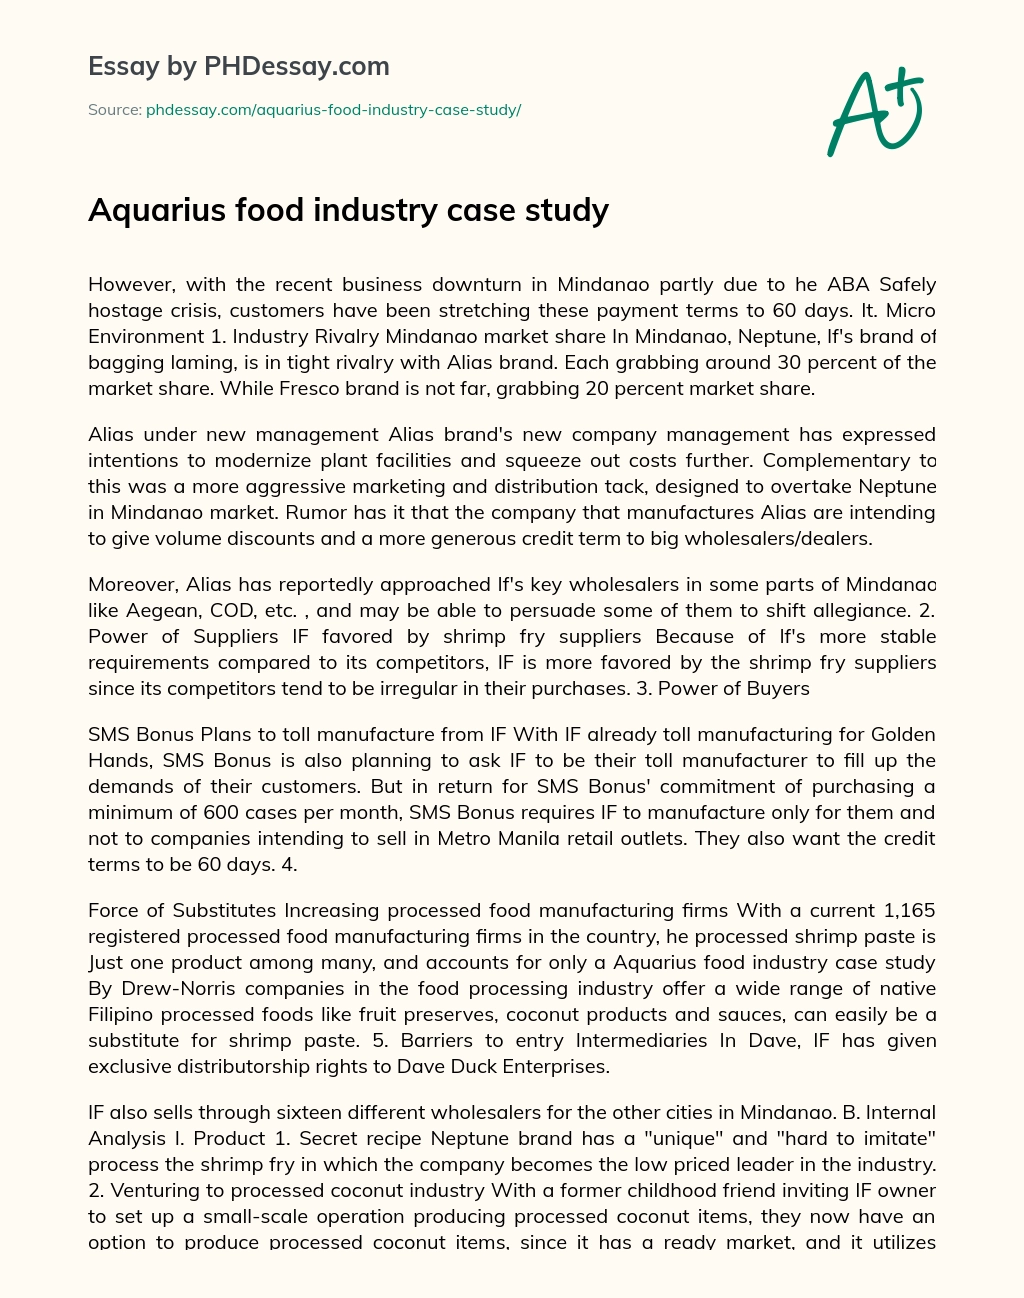 Aquarius food industry case study essay